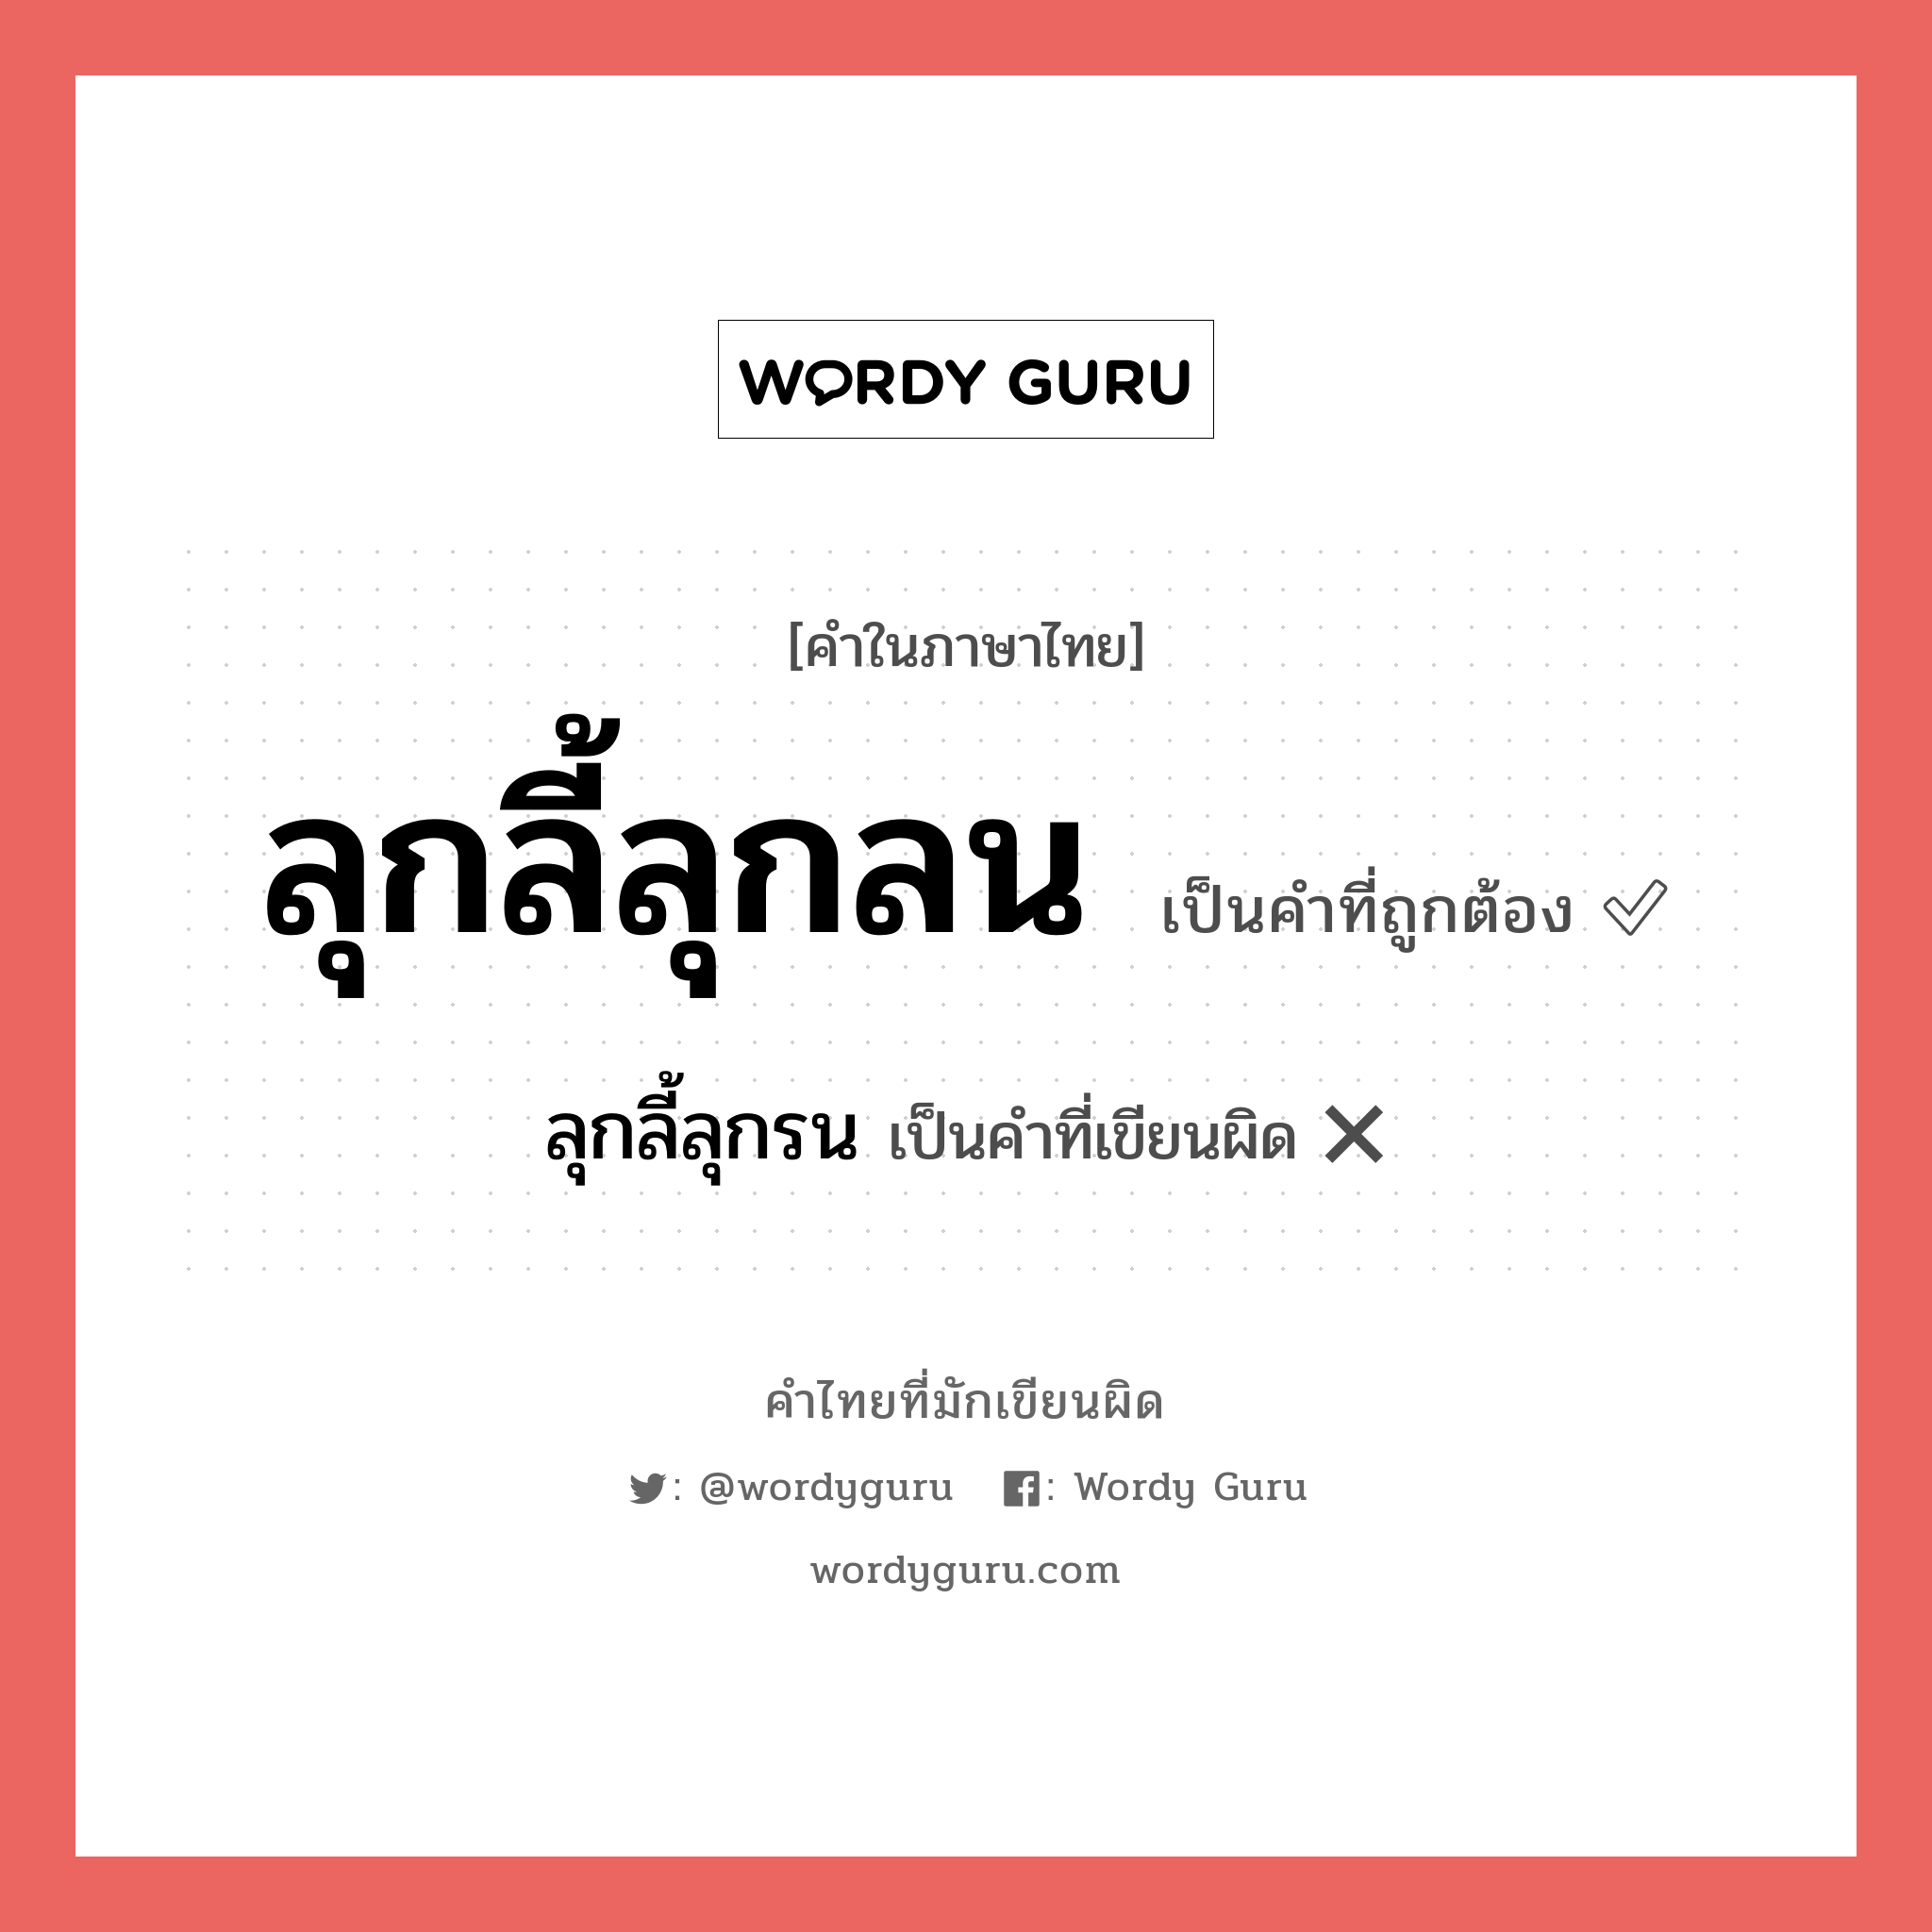 ลุกลี้ลุกรน หรือ ลุกลี้ลุกลน คำไหนเขียนถูก?, คำในภาษาไทยที่มักเขียนผิด ลุกลี้ลุกรน คำที่ผิด ❌ ลุกลี้ลุกลน